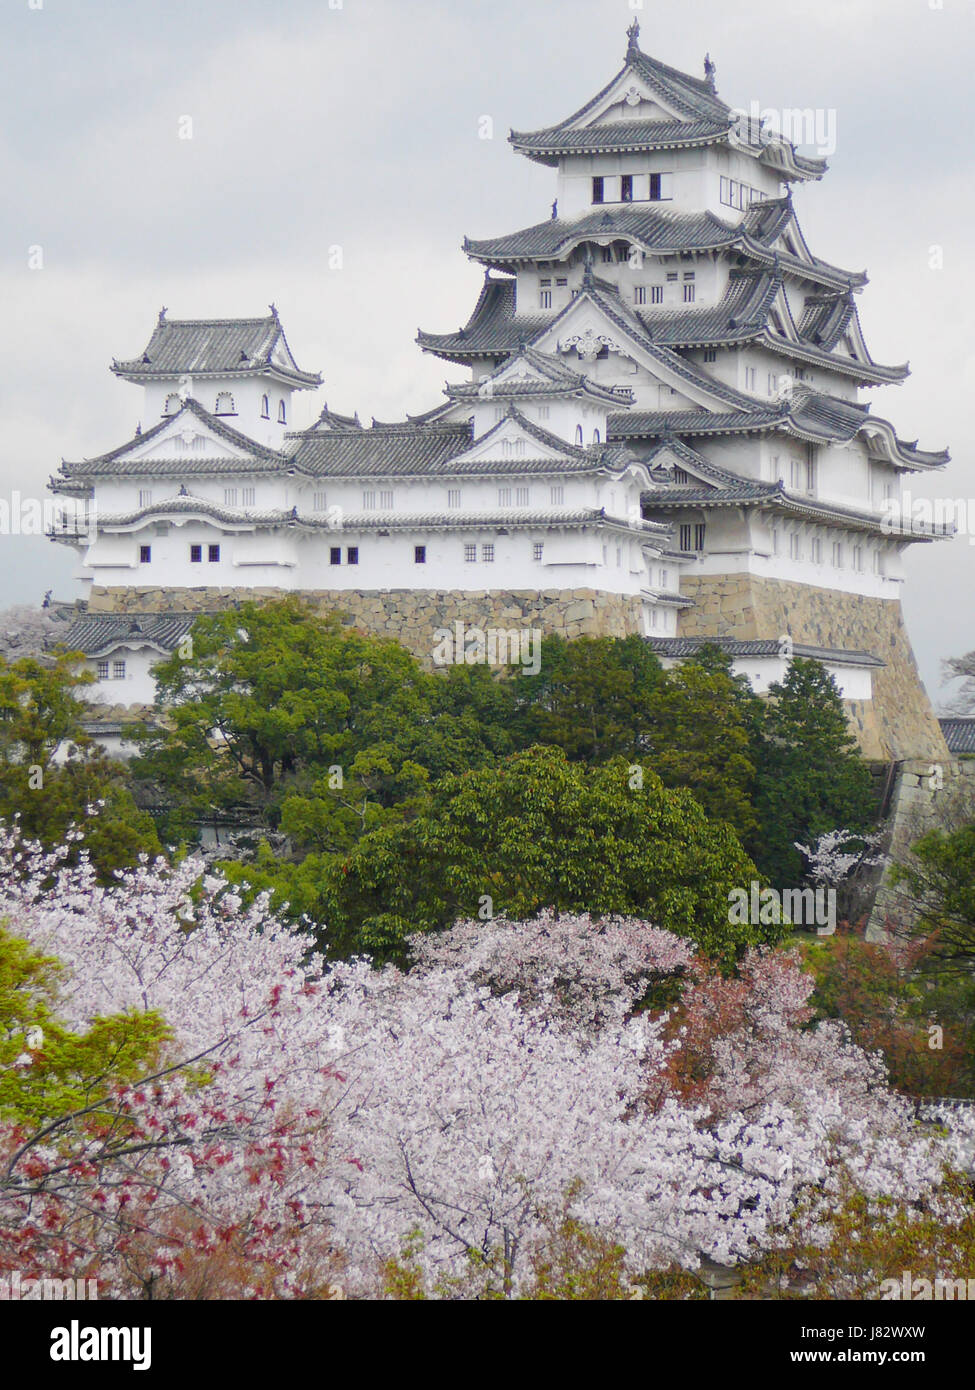 Château chateau japonais lutte combats antiques bois printemps forte de rebondir Banque D'Images